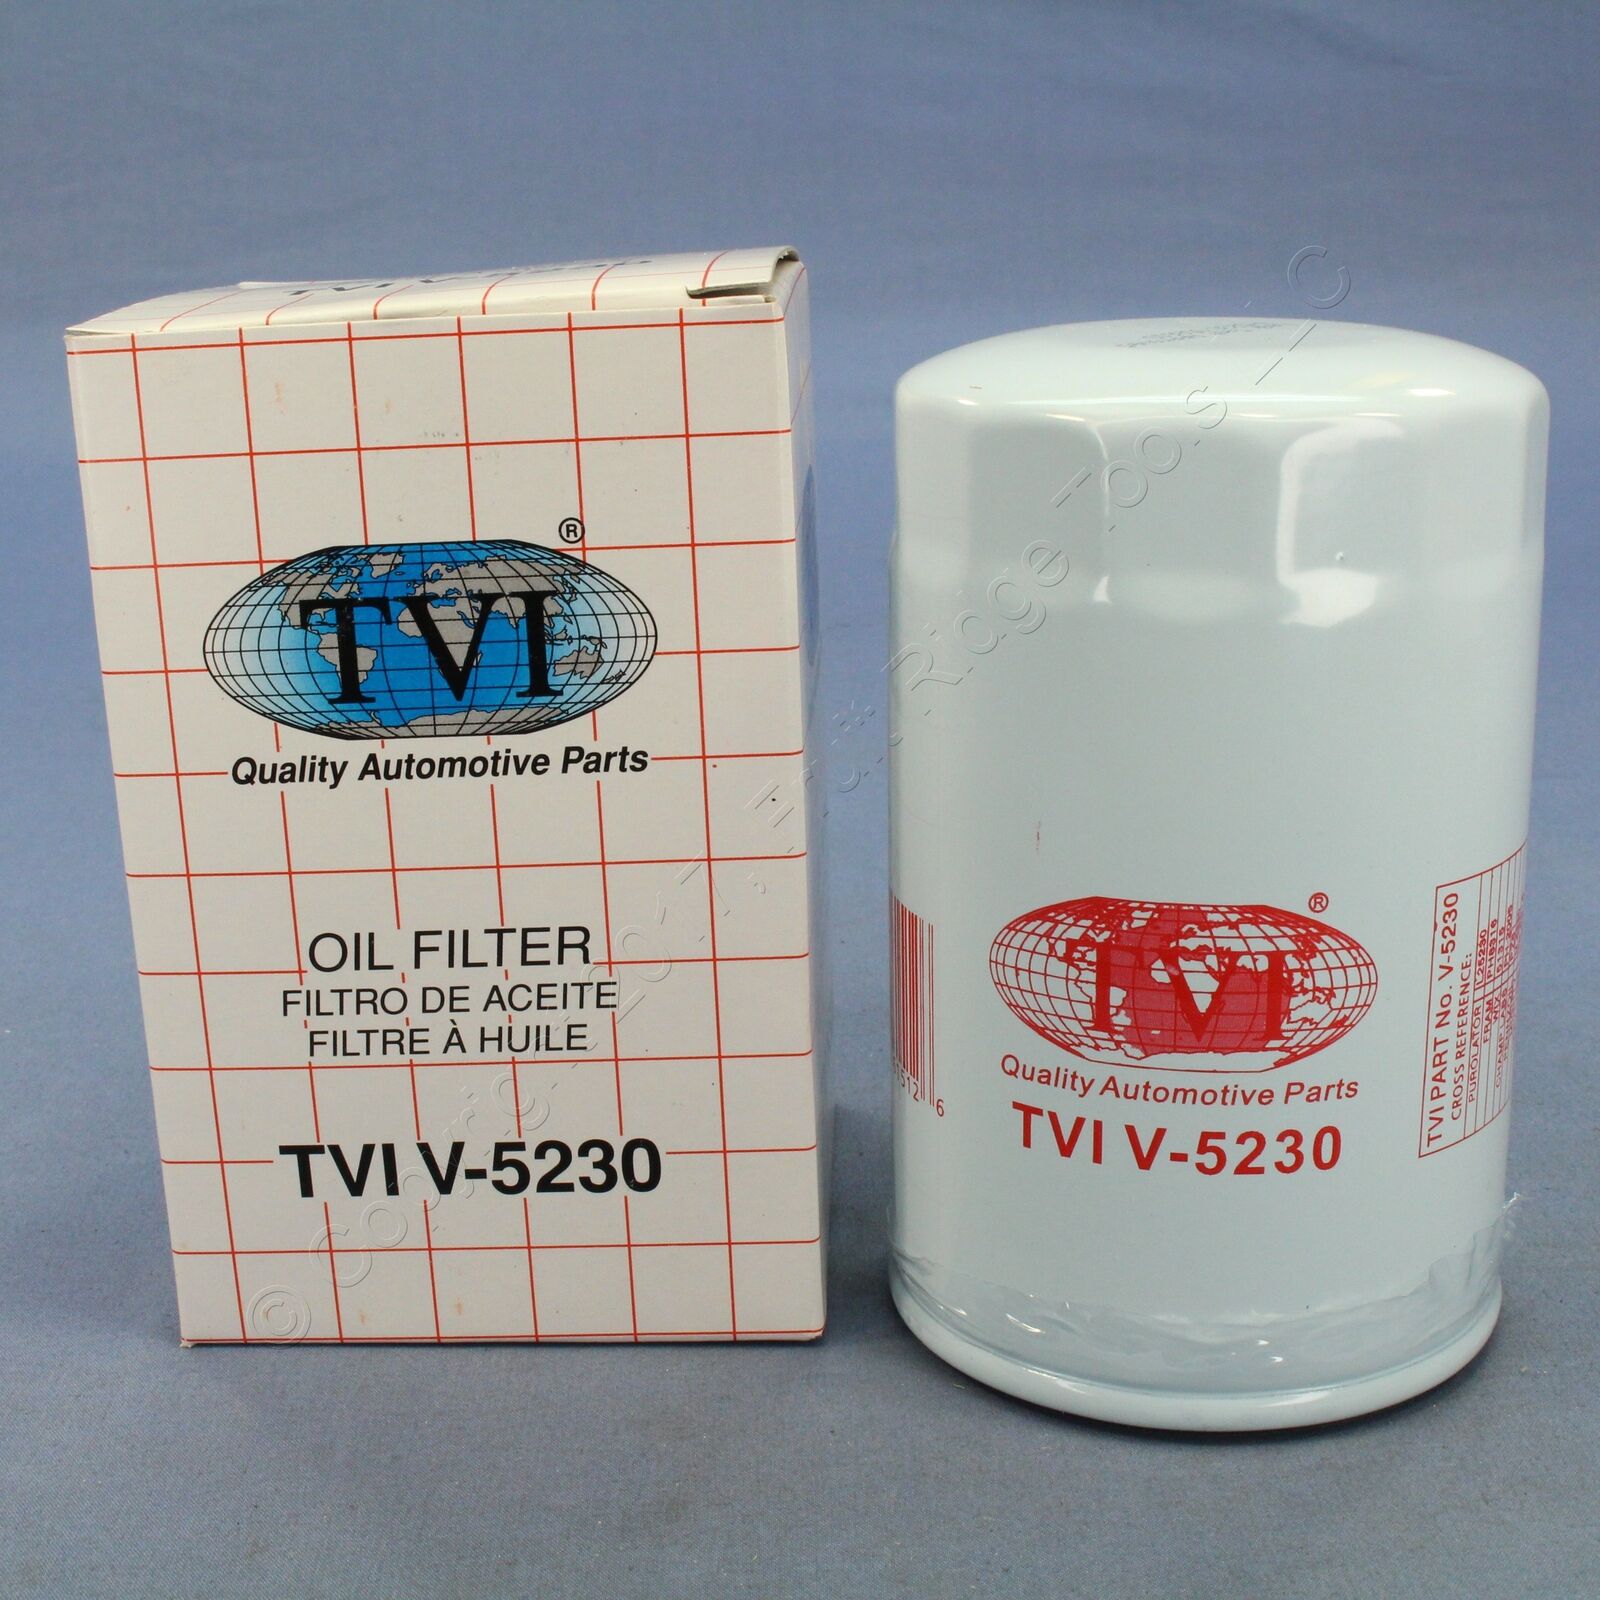 TVI Engine Oil Filter Fits 1998-03 Escort 99-02 Cougar 00-04 Focus TVIV-5230